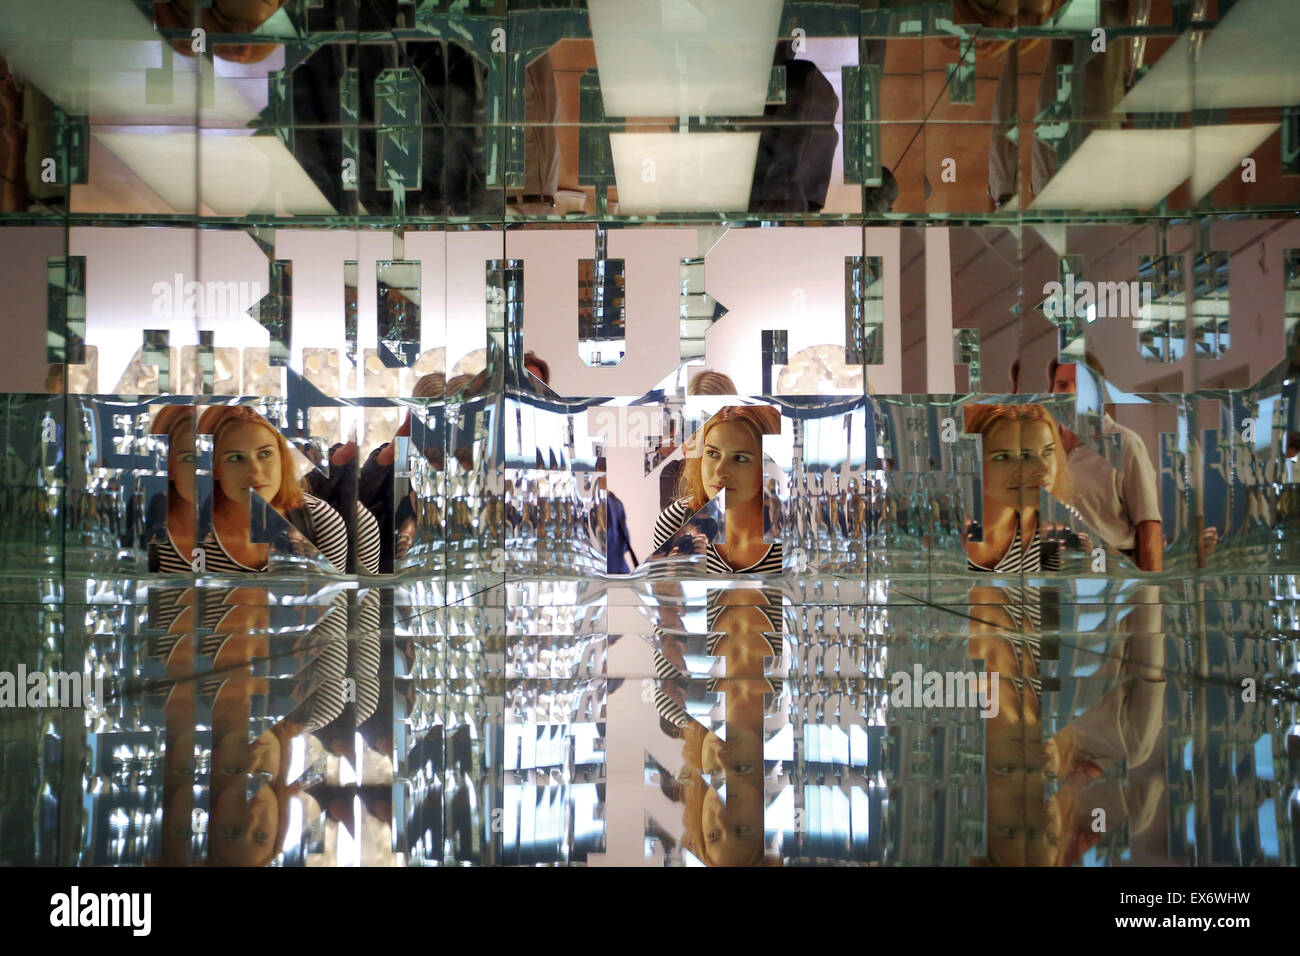 Die Skulptur 'End/Run' (2014) vom US-amerikanischen Künstler Doug Aitken ist am 08.07.2015 im Museum 'Schirn' in Frankfurt am Main (Hessen) zu sehen. Filmarbeiten, Skulpturen und eine große Soundinstallation des US-amerikanischen Multimediakünstlers Aitken sind vom 9. Juli bis zum 27. September 2015 in der Frankfurter 'Schirn' zu sehen und zu hören. Für diese erste deutsche Einzelpräsentation der Werke des Künstlers hat die Schirn ihre komplette Ausstellungsfläche zur Verfügung gestellt. Foto: Fredrik von Erichsen/dpa    (c) dpa - Bildfunk    Stock Photo